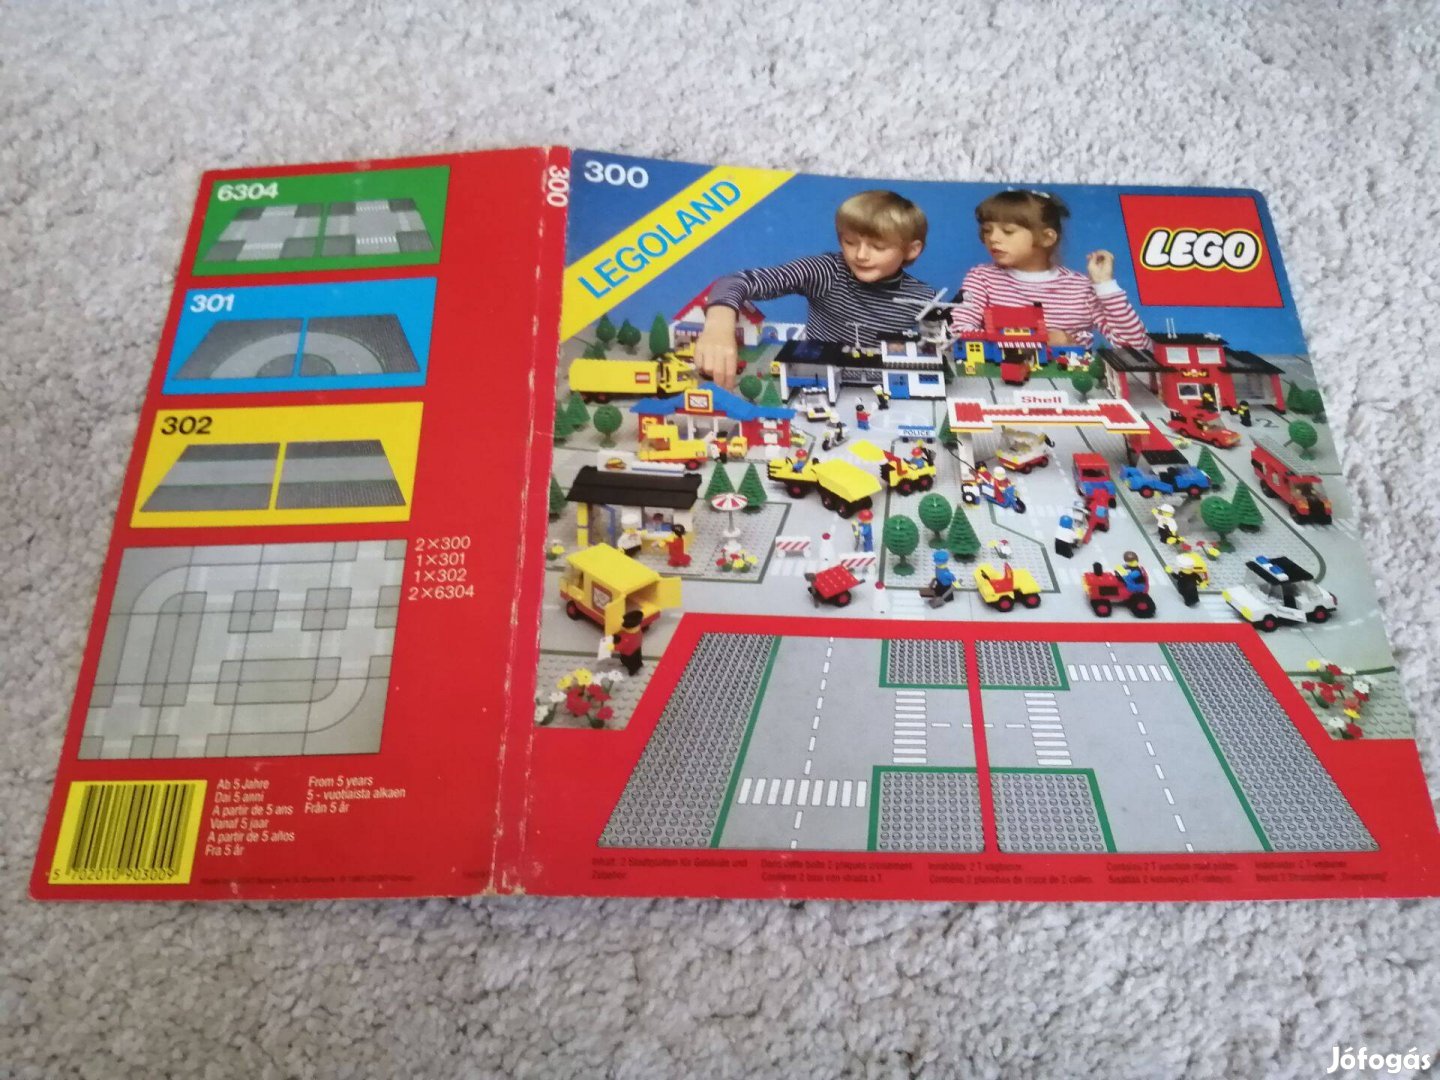 LEGO 300 kereszteződés alaplap baseplate classic town